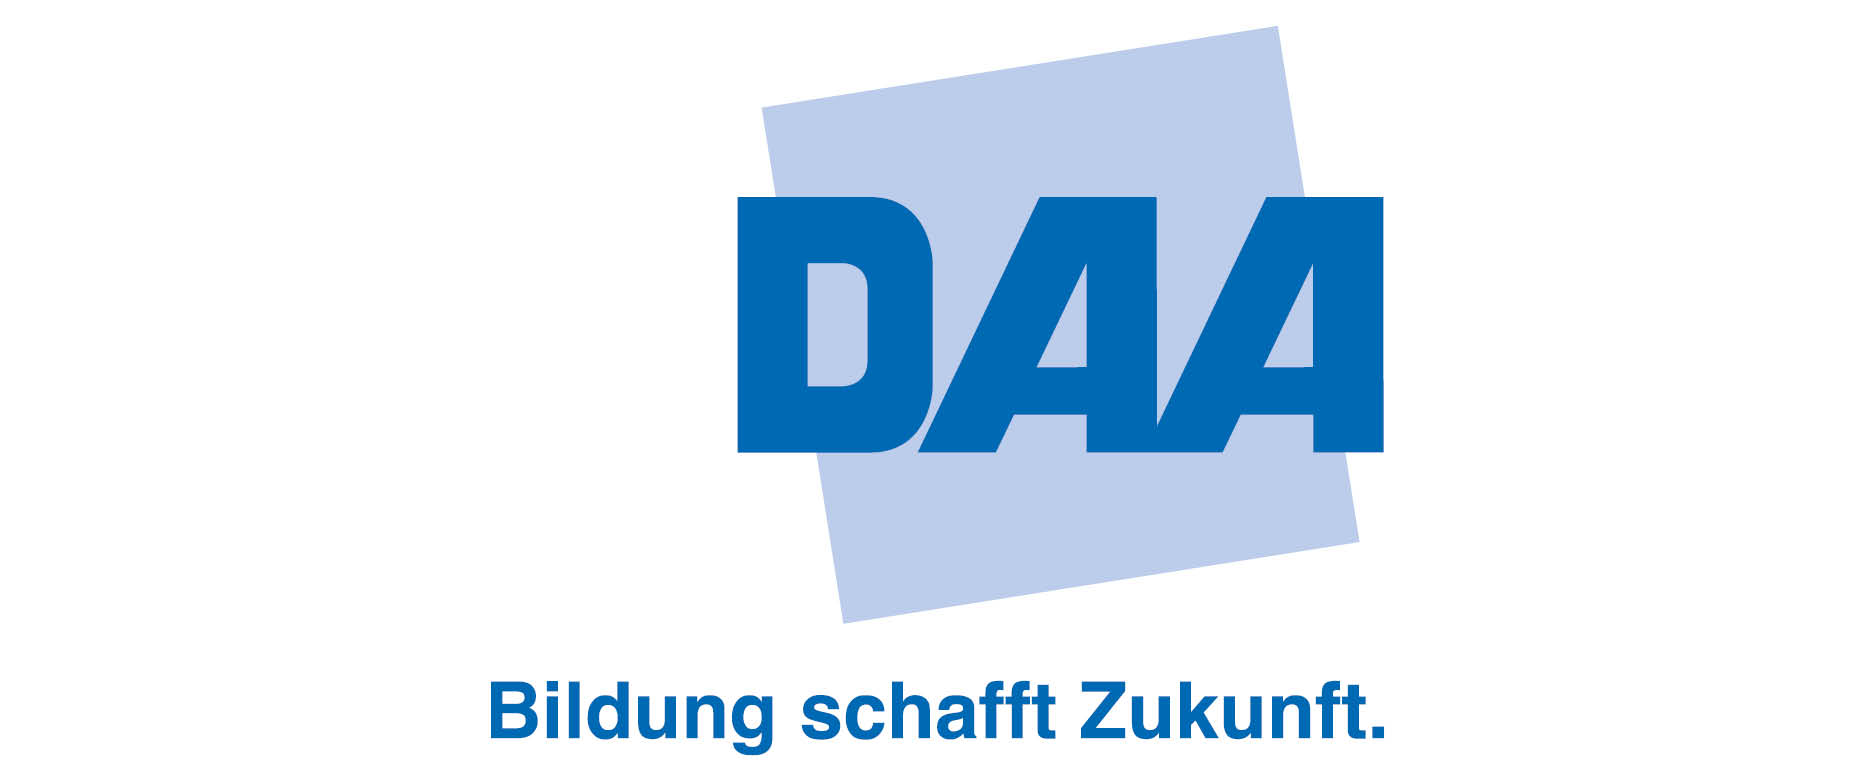 DAA Deutsche Angestellten-Akademie